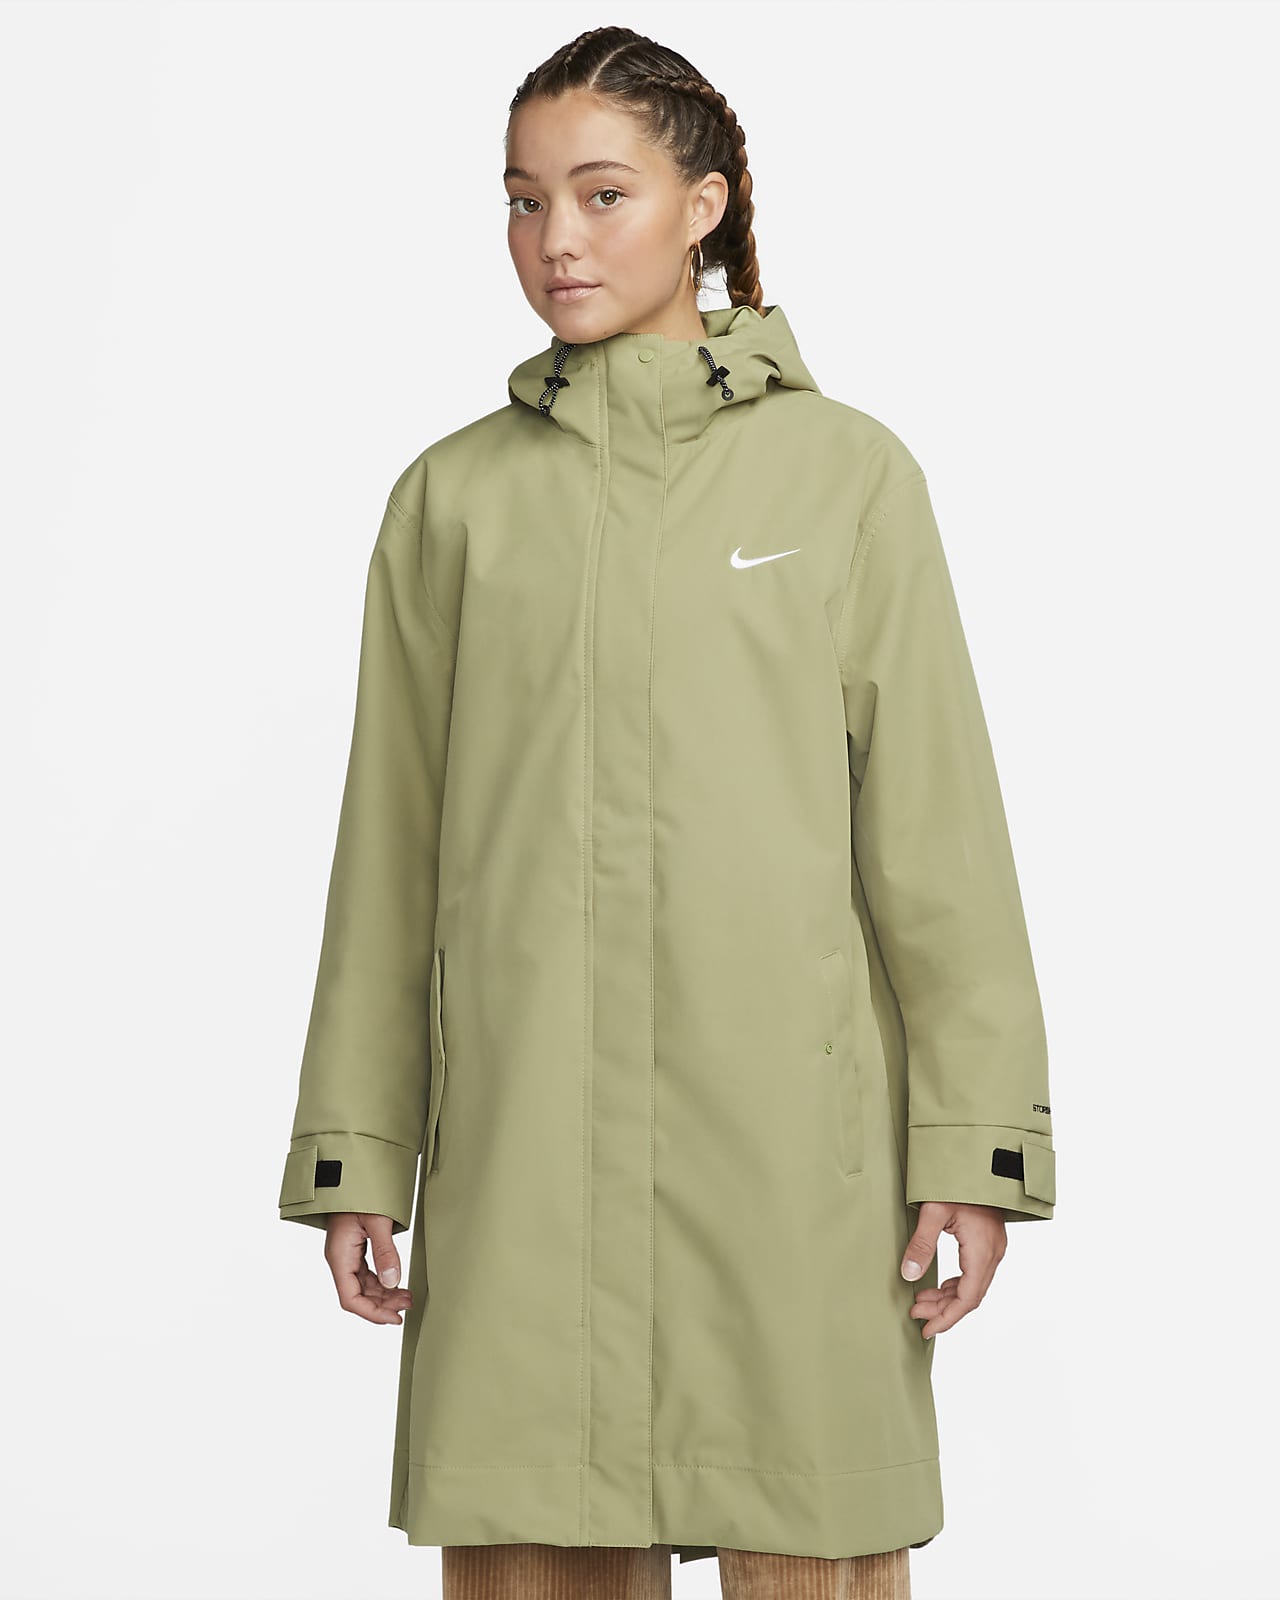 Nike Sportswear Essential Storm-FIT Women's Woven Parka Jacket. Nike.com